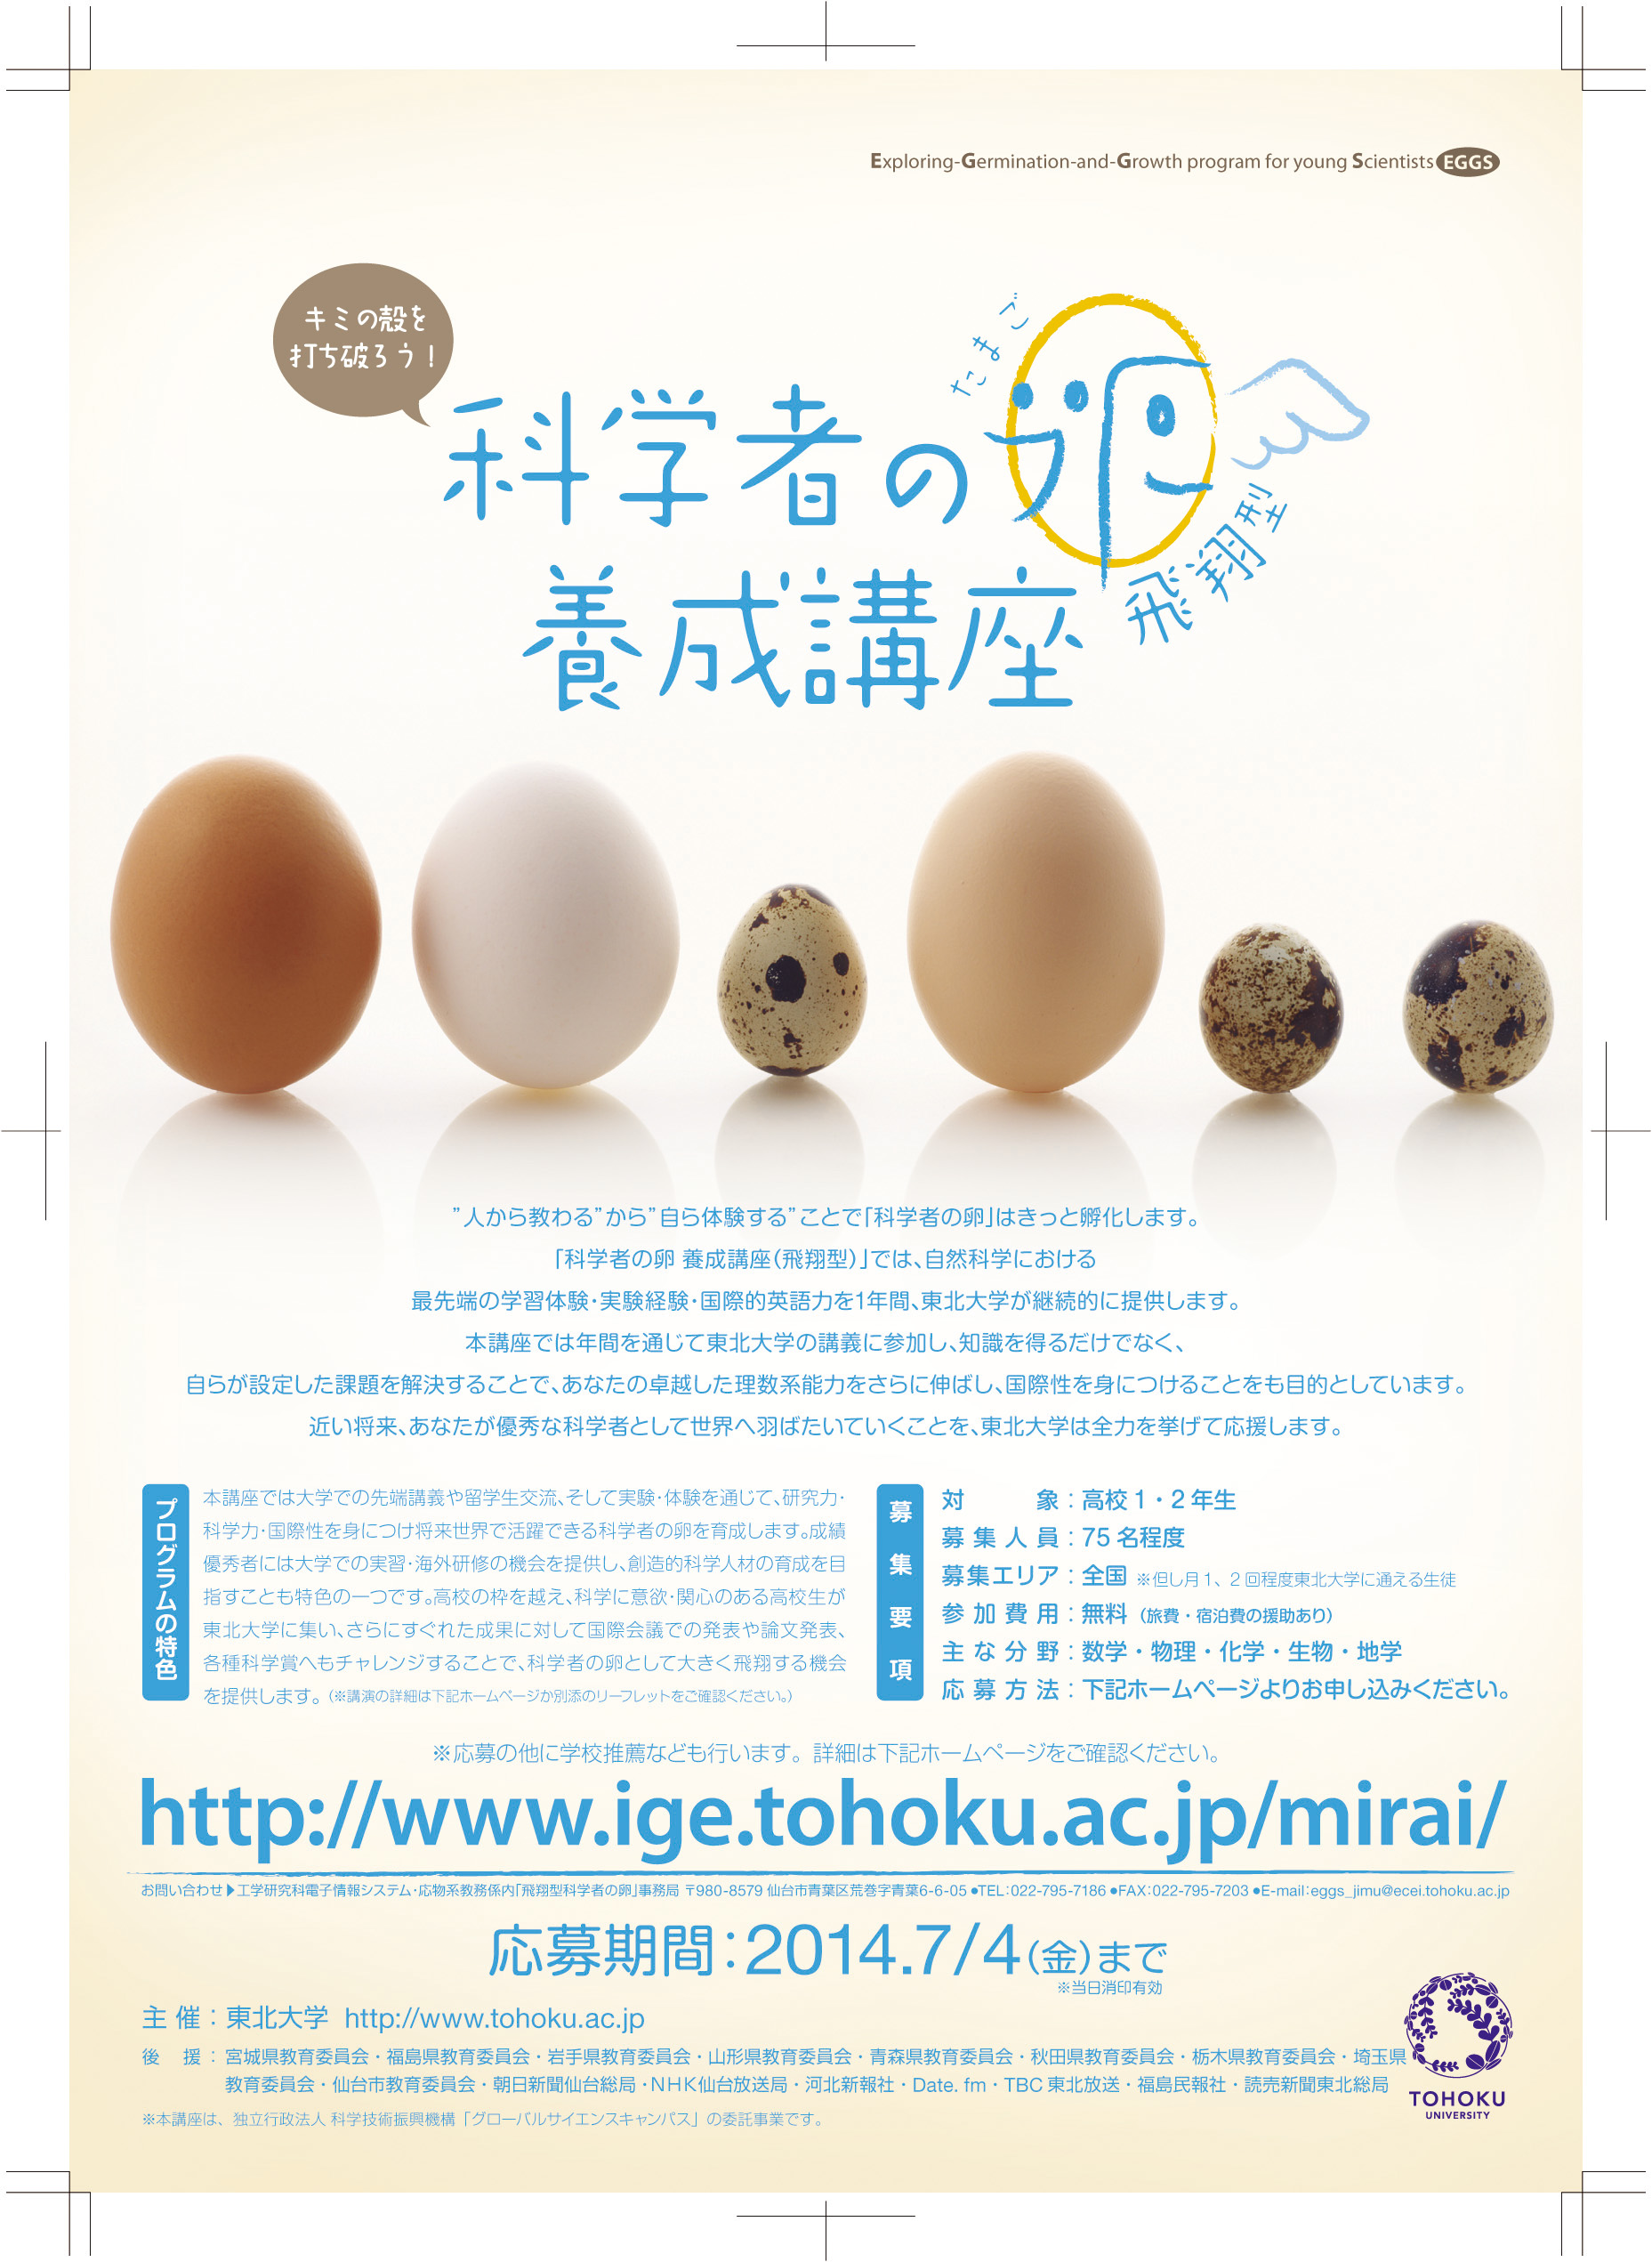 http://www.ige.tohoku.ac.jp/mirai/news/upload_items/201406/140609A4_A.jpg